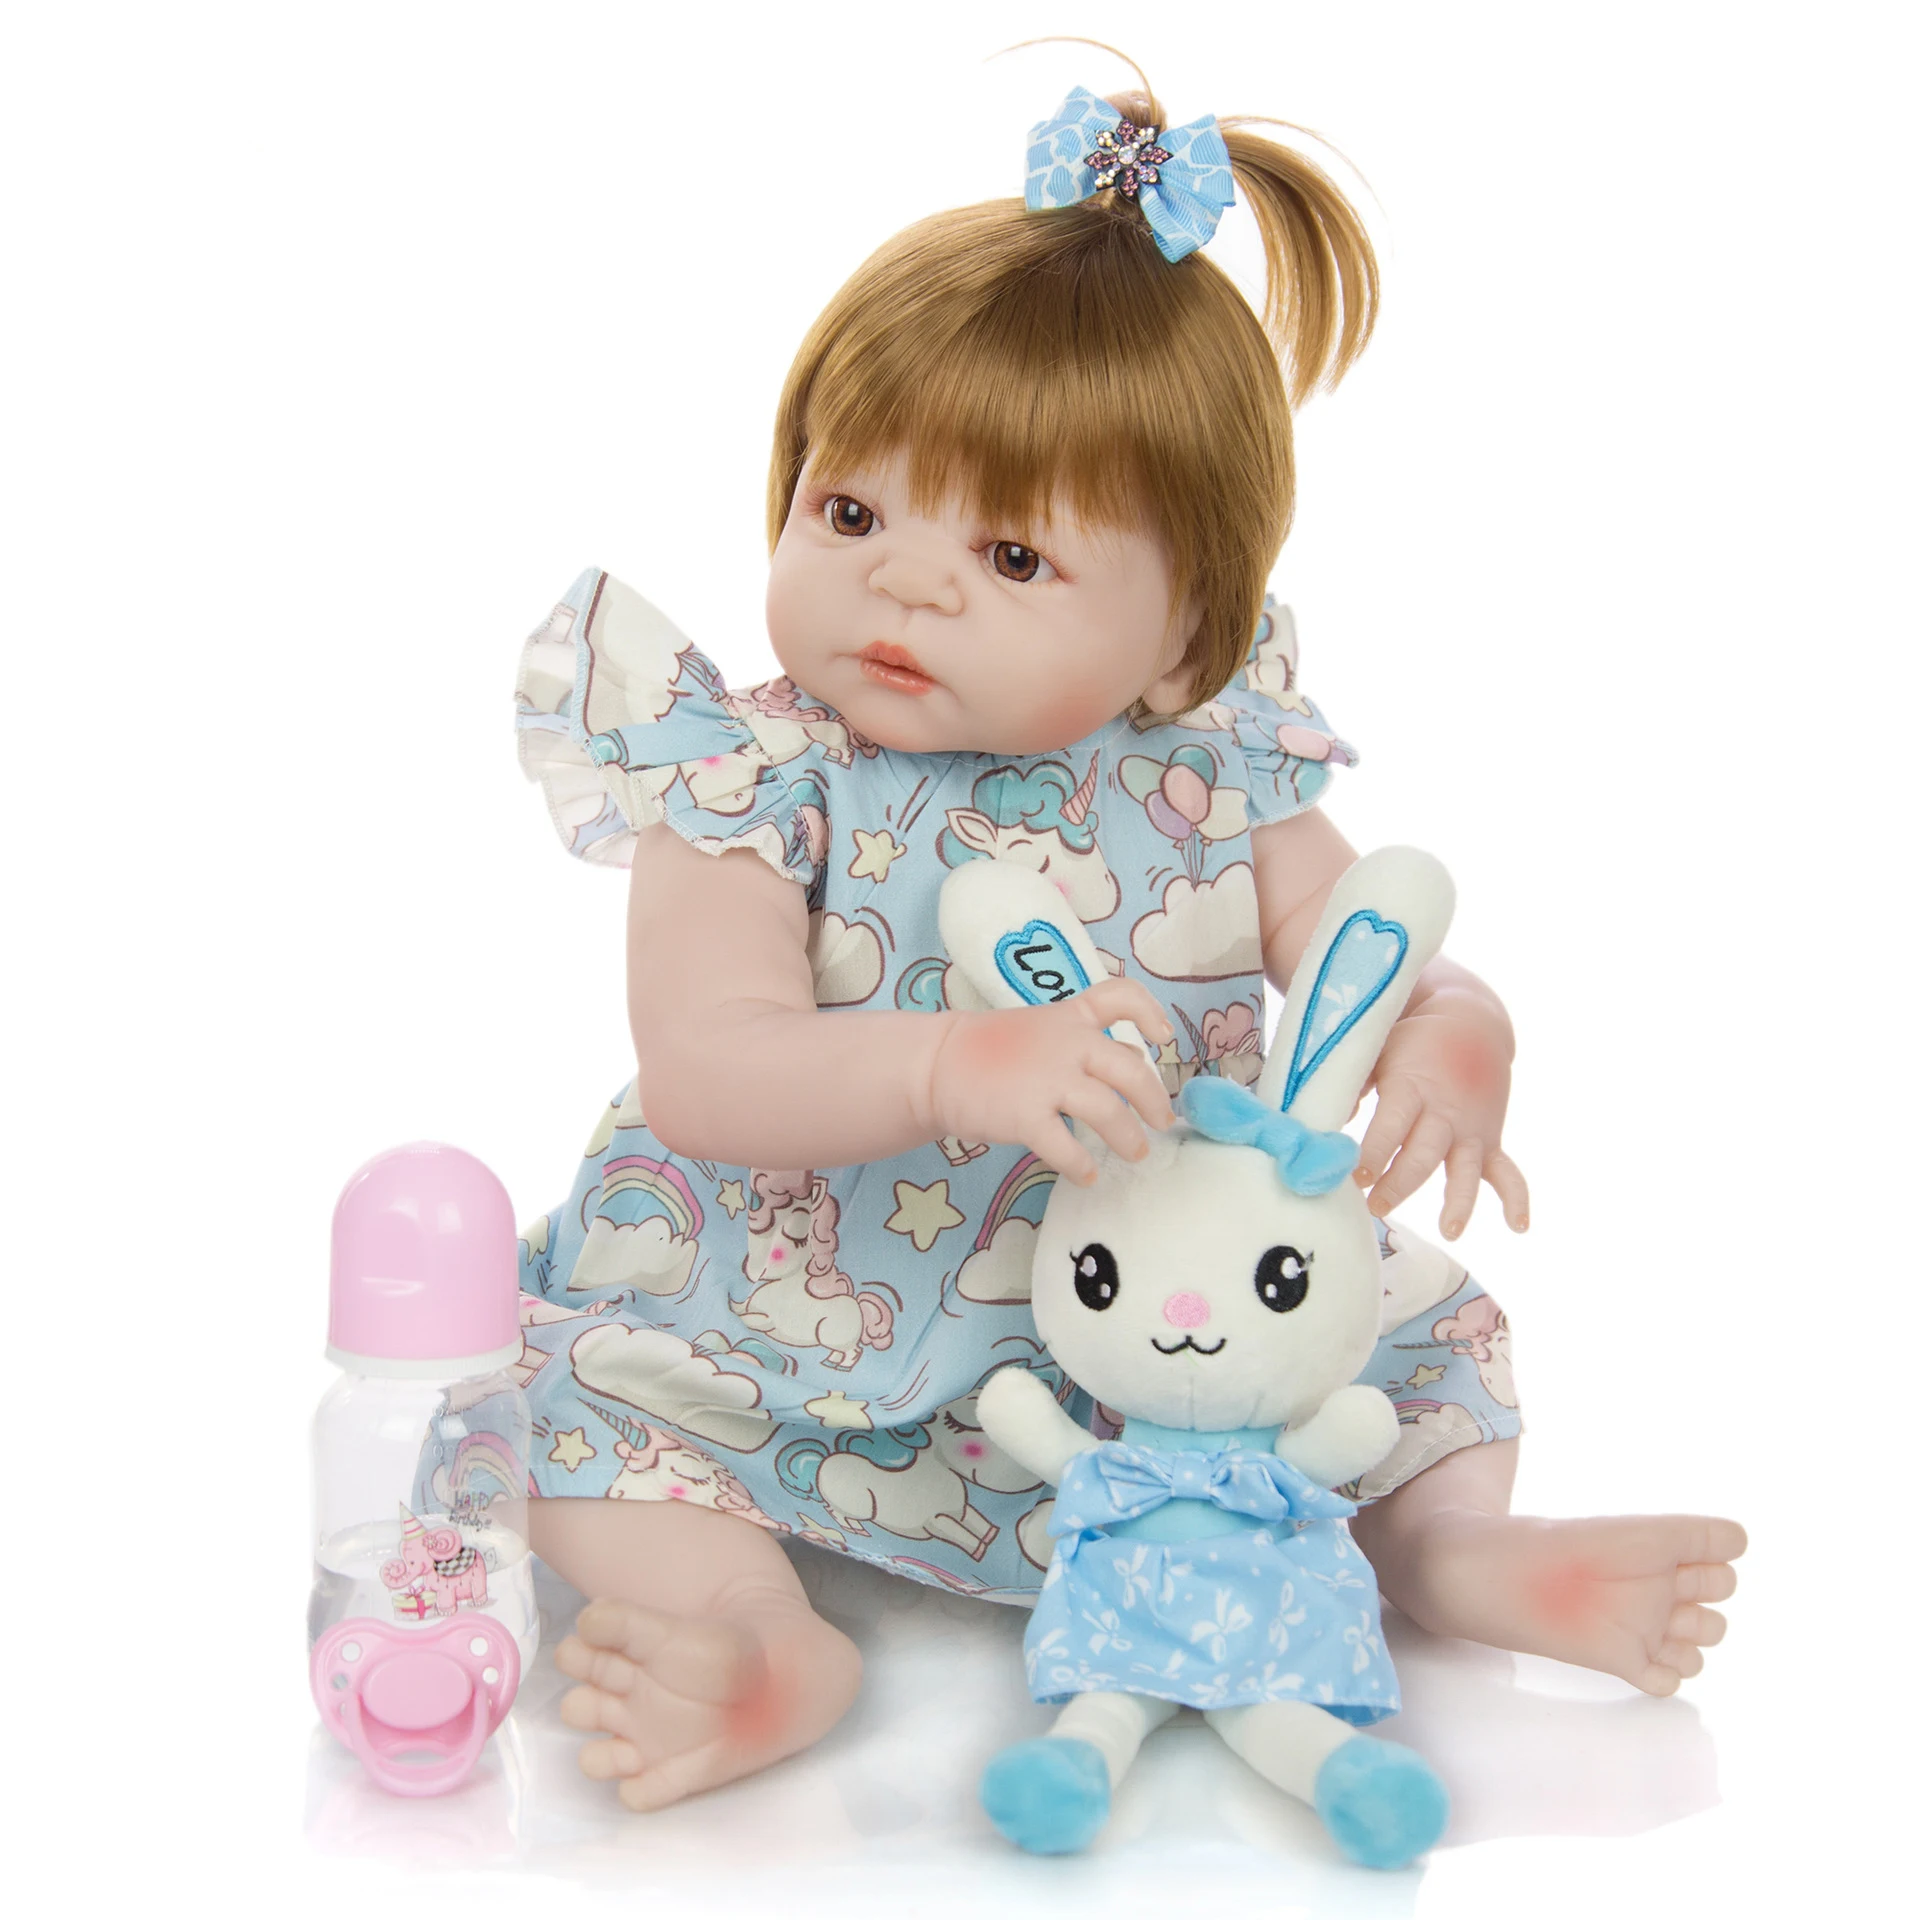 2" 55 см игрушка тело Кукла Reborn Baby Doll девочка кукла игрушка для девочки принцесса детские куклы Дети День рождения Рождество подарки игрушка для ребенка - Цвет: U012